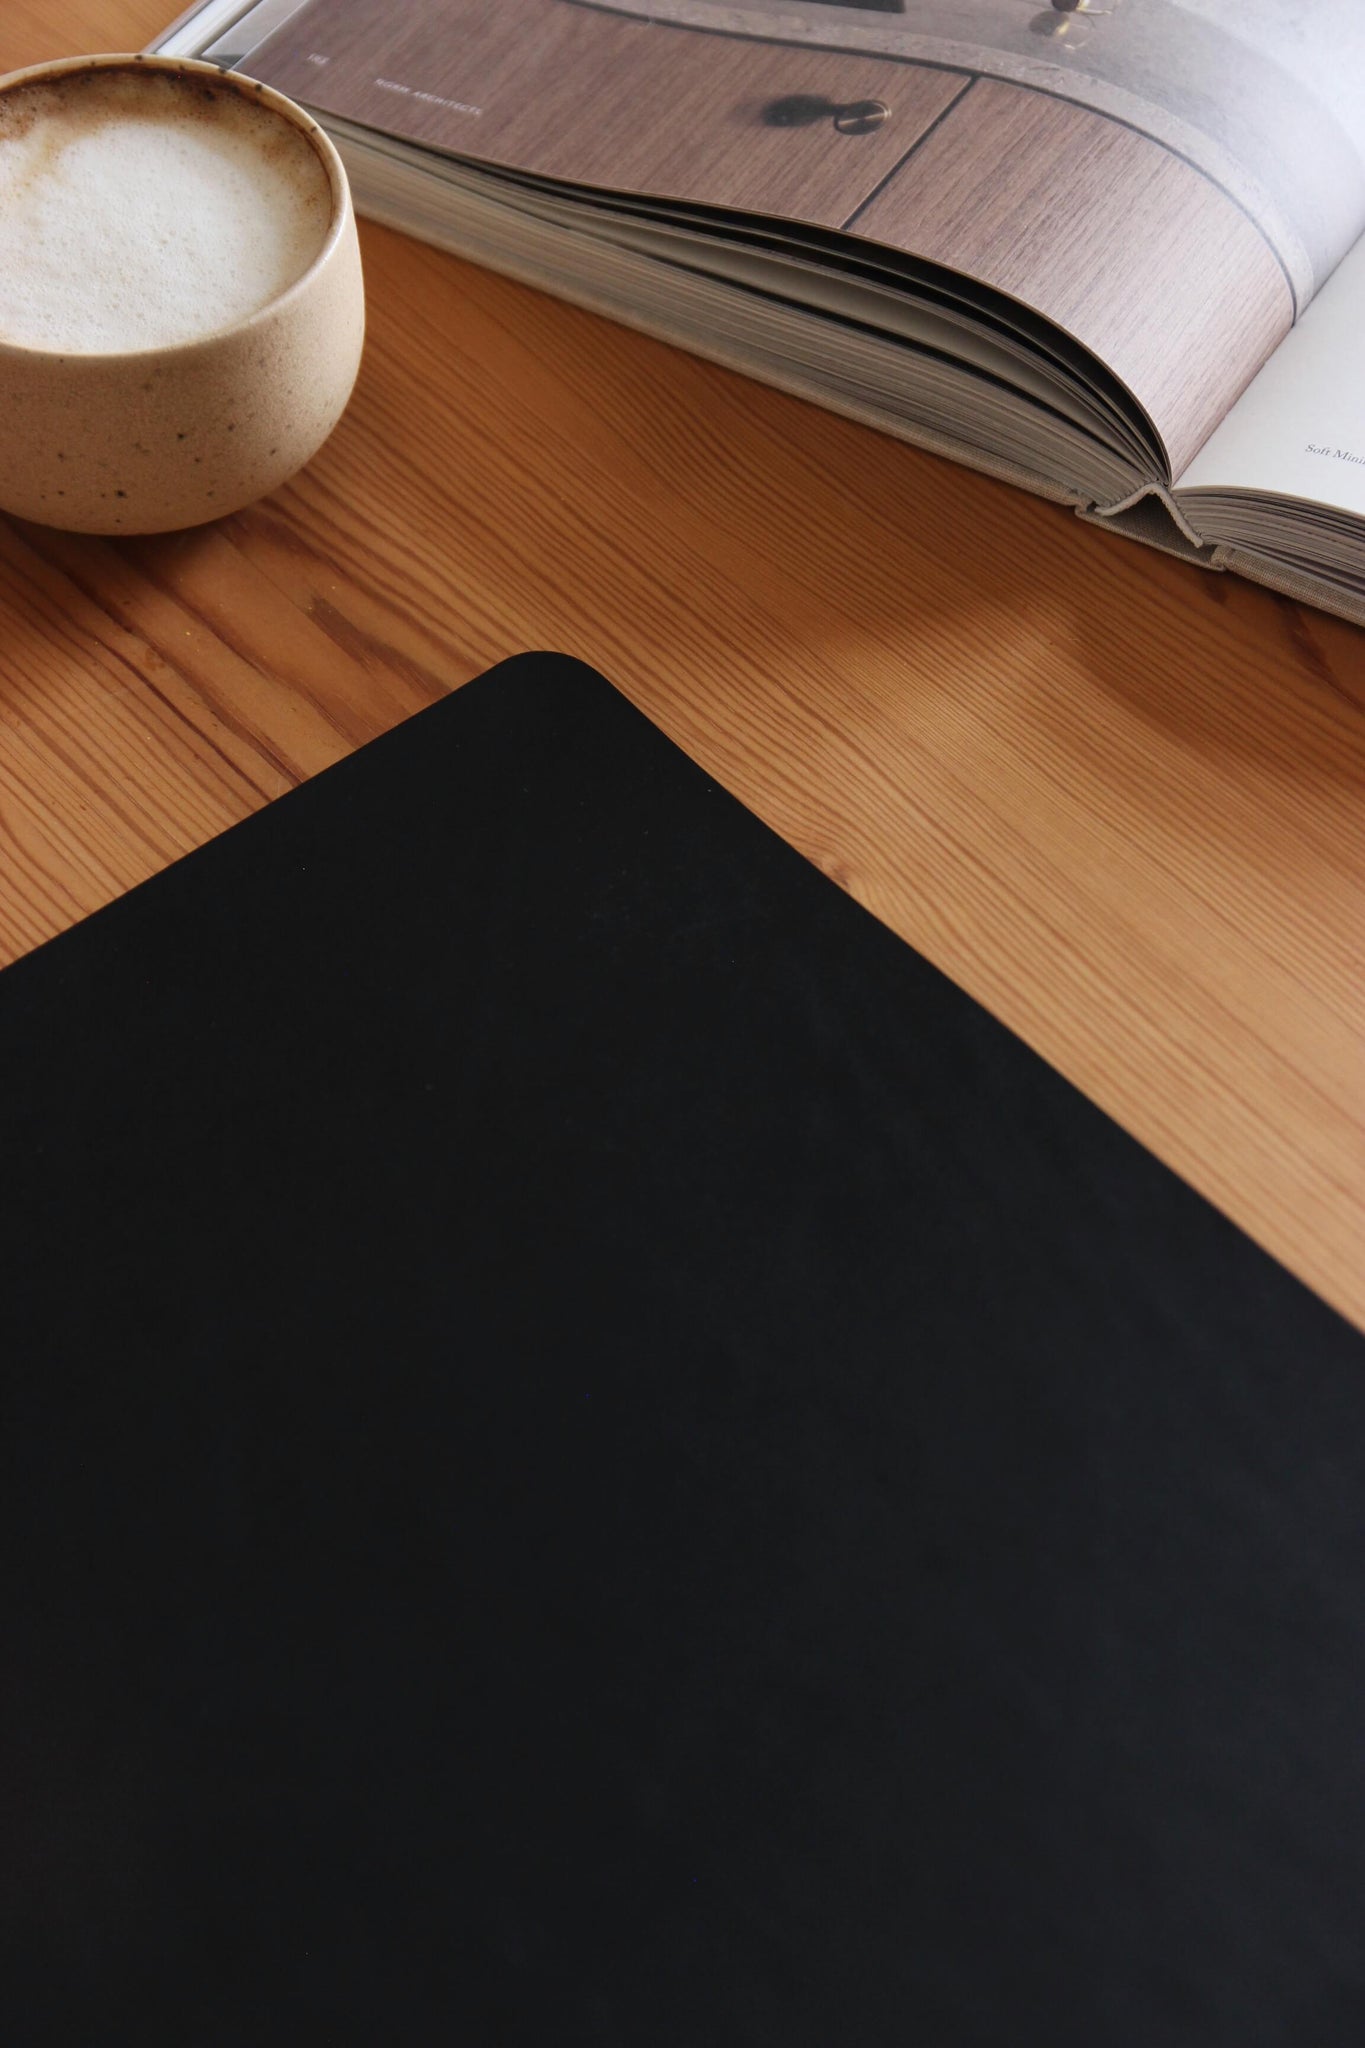 Lederkante einer Schreibtischunterlage aus Leder in Schwarz auf einer Holzplatte und eine Kaffeetasse und ein Buch.